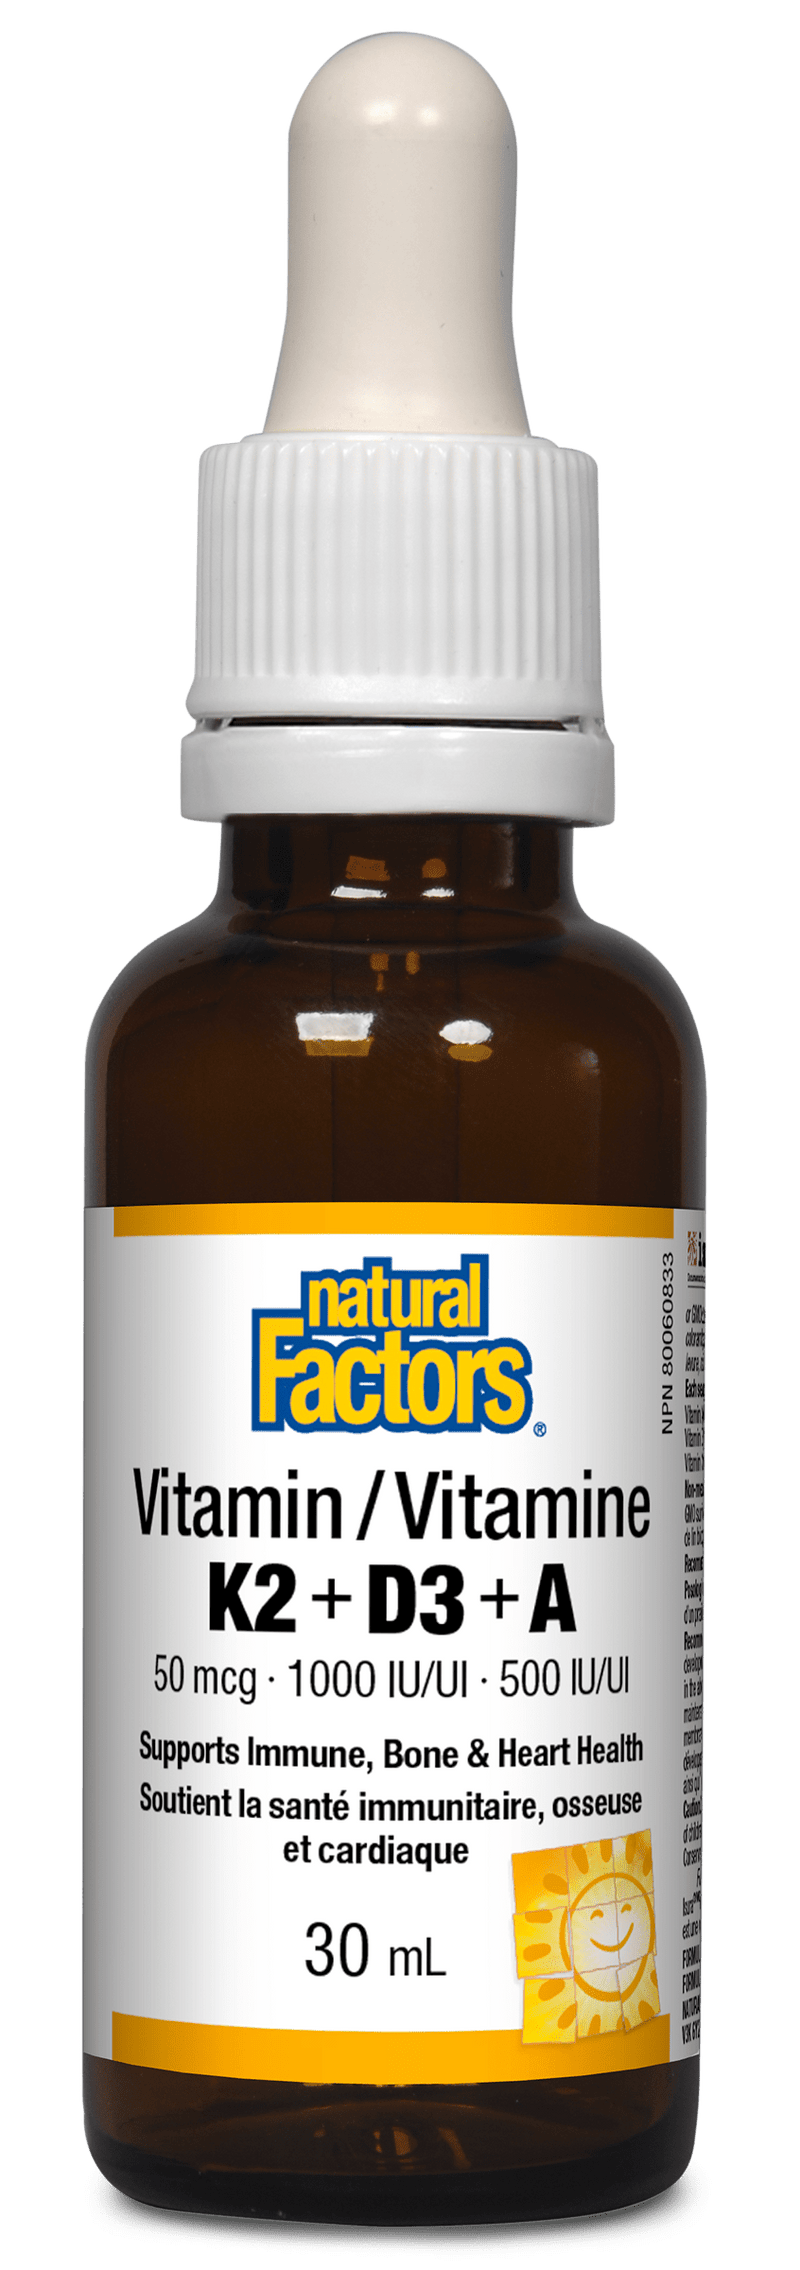 Natural Factors Vitamin K2+D3+A 50 mcg · 1000 IU · 500 IU